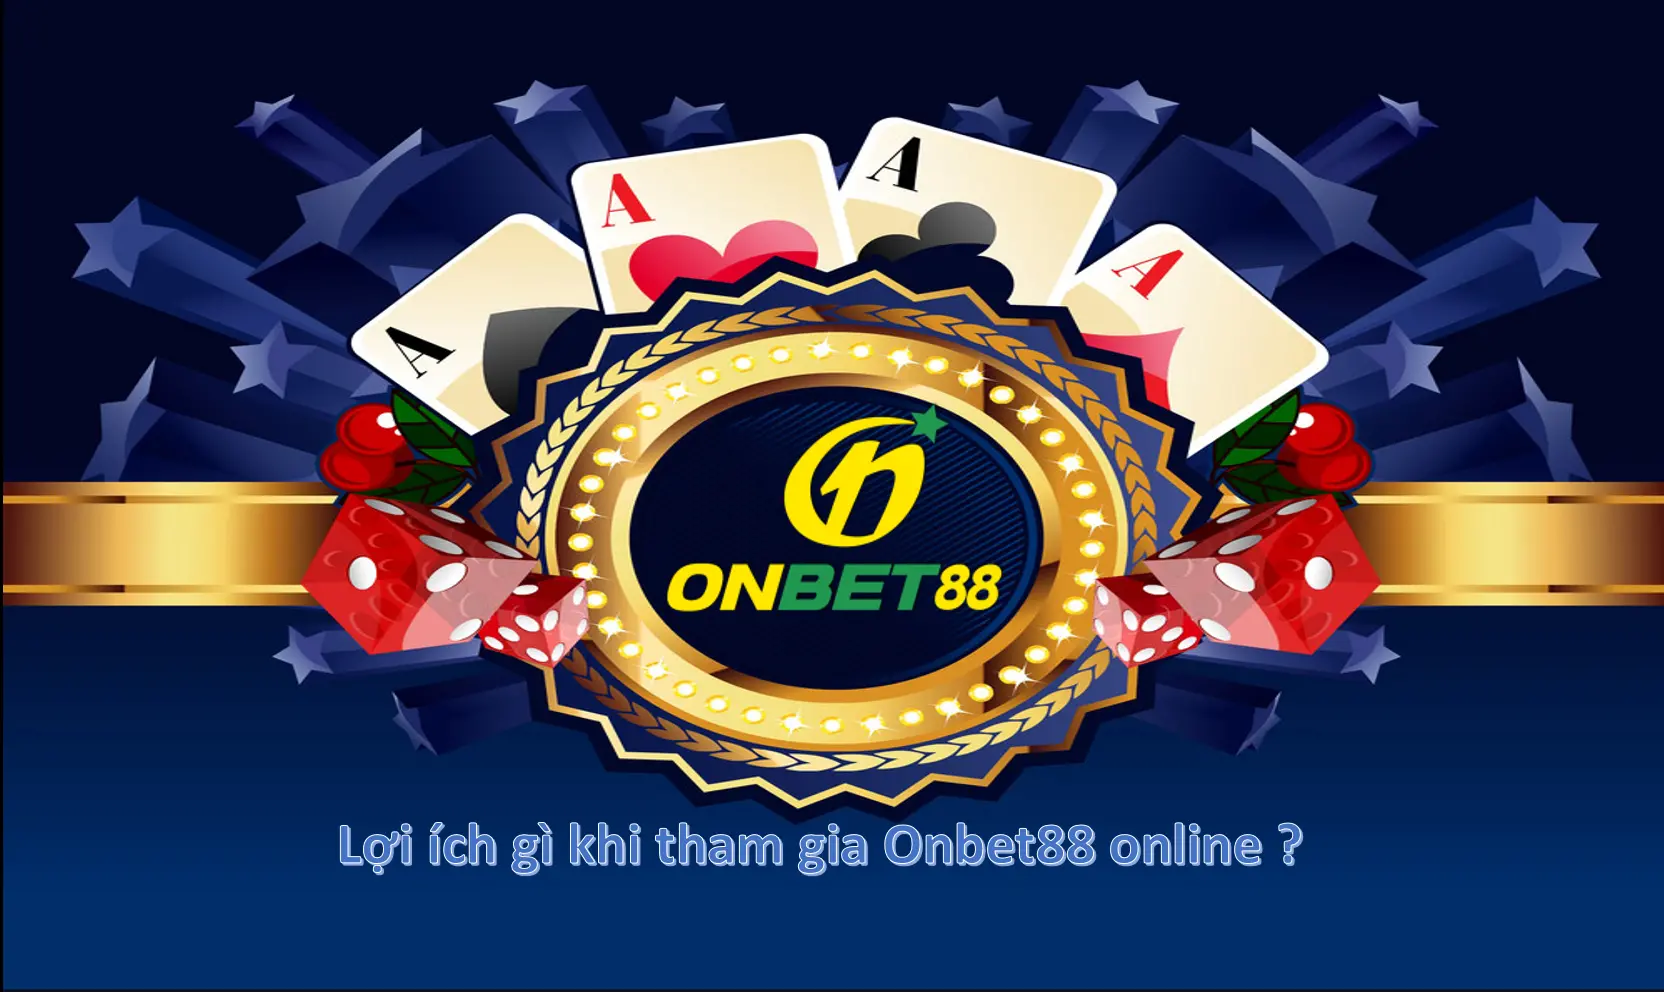 Lợi ích gì khi tham gia Onbet88 online ?